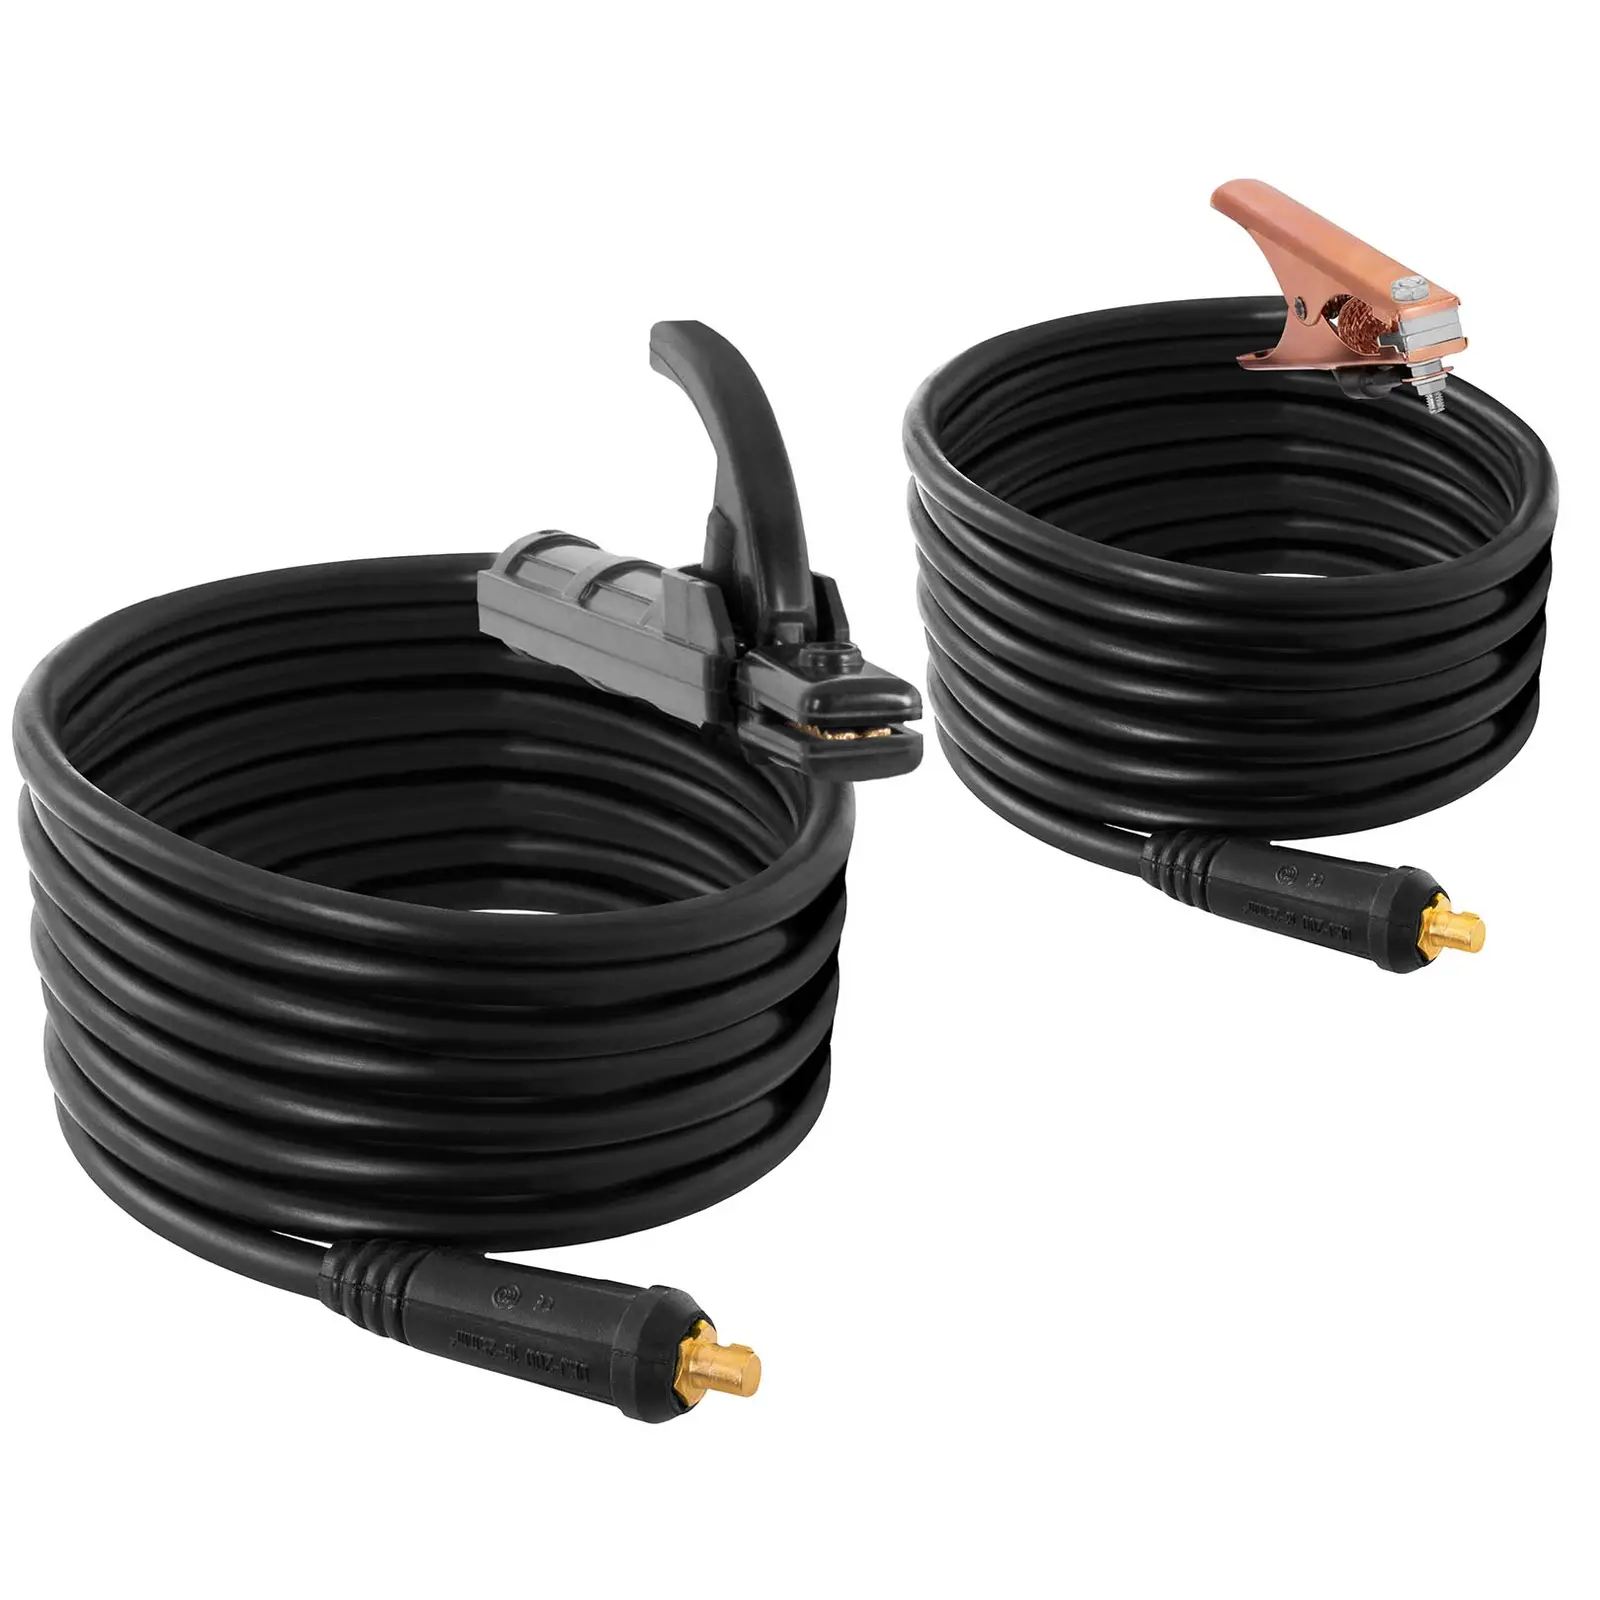 Set de soldadura - soldador MMA - 250 A - cable de 8 m - ciclo de trabajo: 60 % - electrodos E308L-17 - 2,5 x 300 mm - 5 kg & E6013 - Ø 2,5 x 350 mm - 5 kg